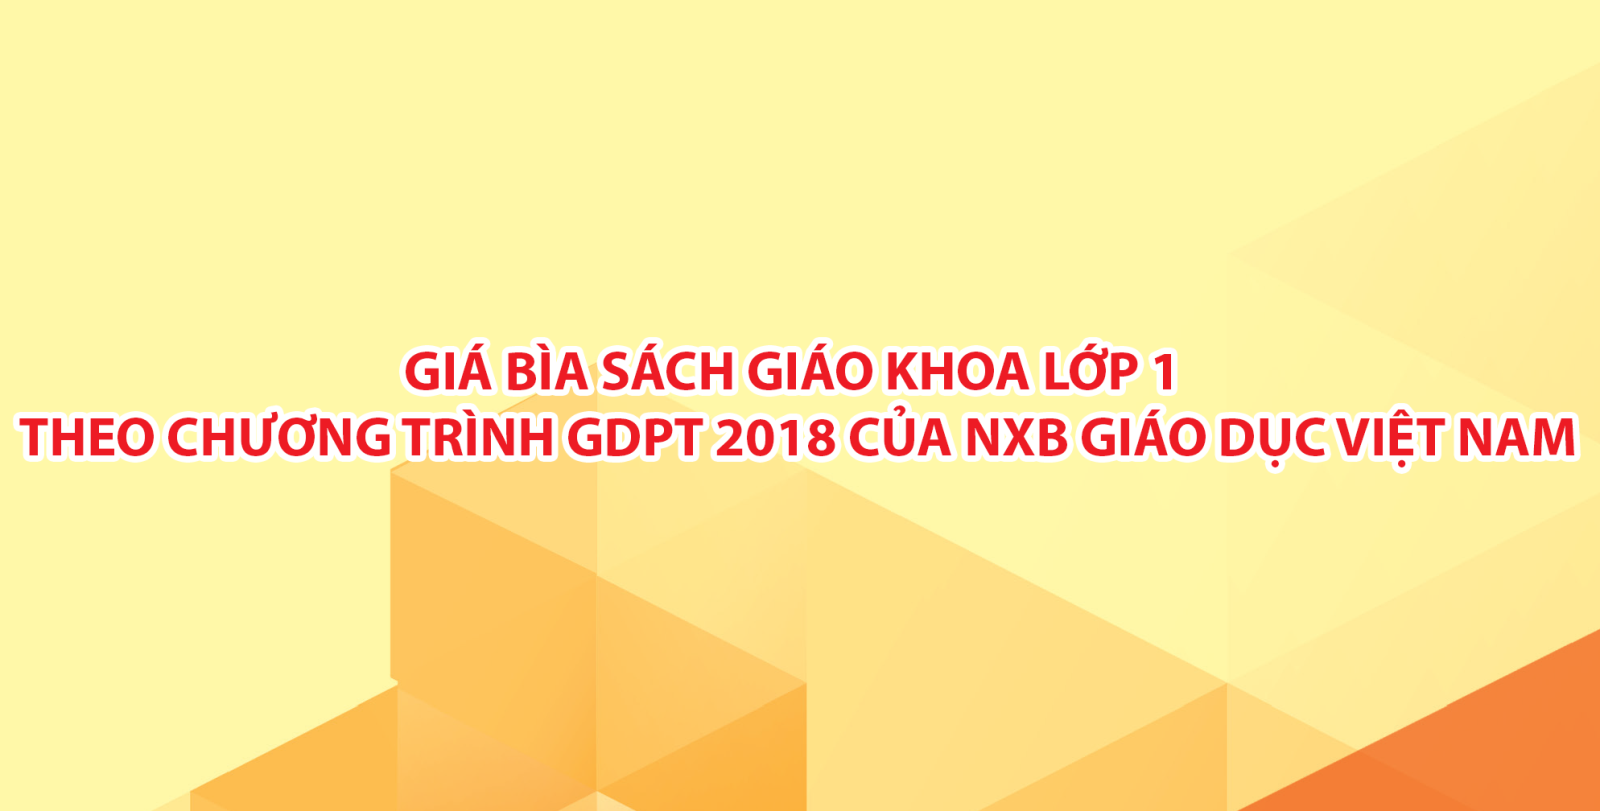 Giá bìa sách giáo khoa lớp 1 theo chương trình GDPT 2018 của NXB Giáo dục Việt Nam